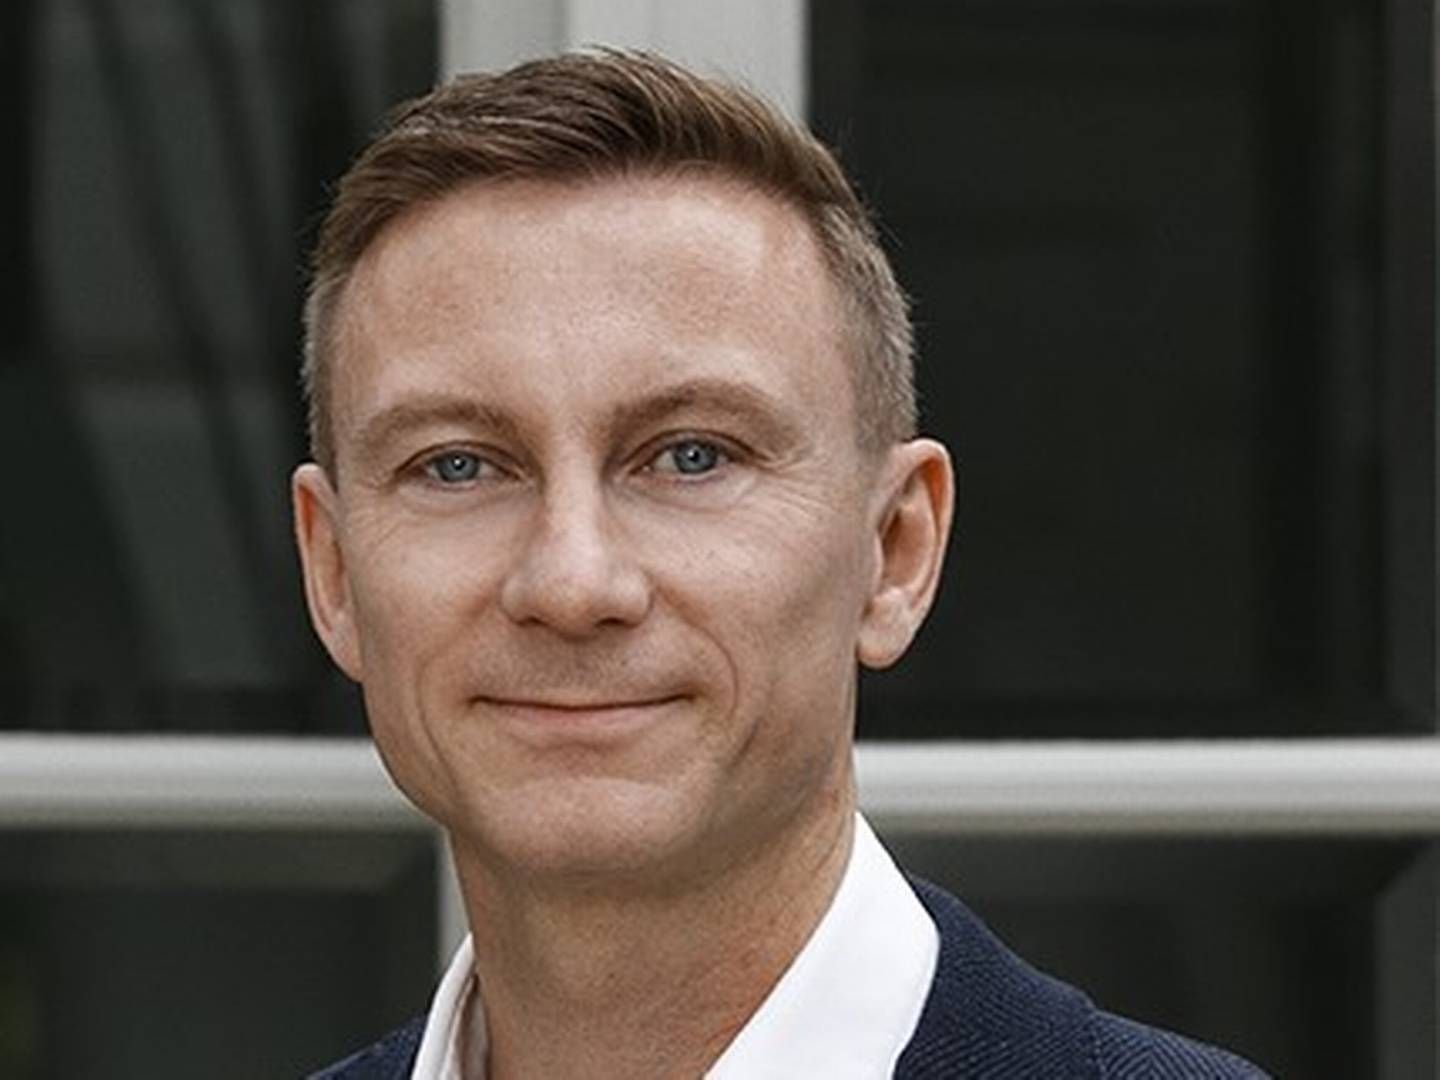 44-årige Peter Søgaard bliver efter knap 14 år i virksomheden nu adm. direktør for udviklerkoncernen Innovater: ”De tre nøgleord for mig er overblik, prioritering og eksekvering". | Foto: PR / Innovater